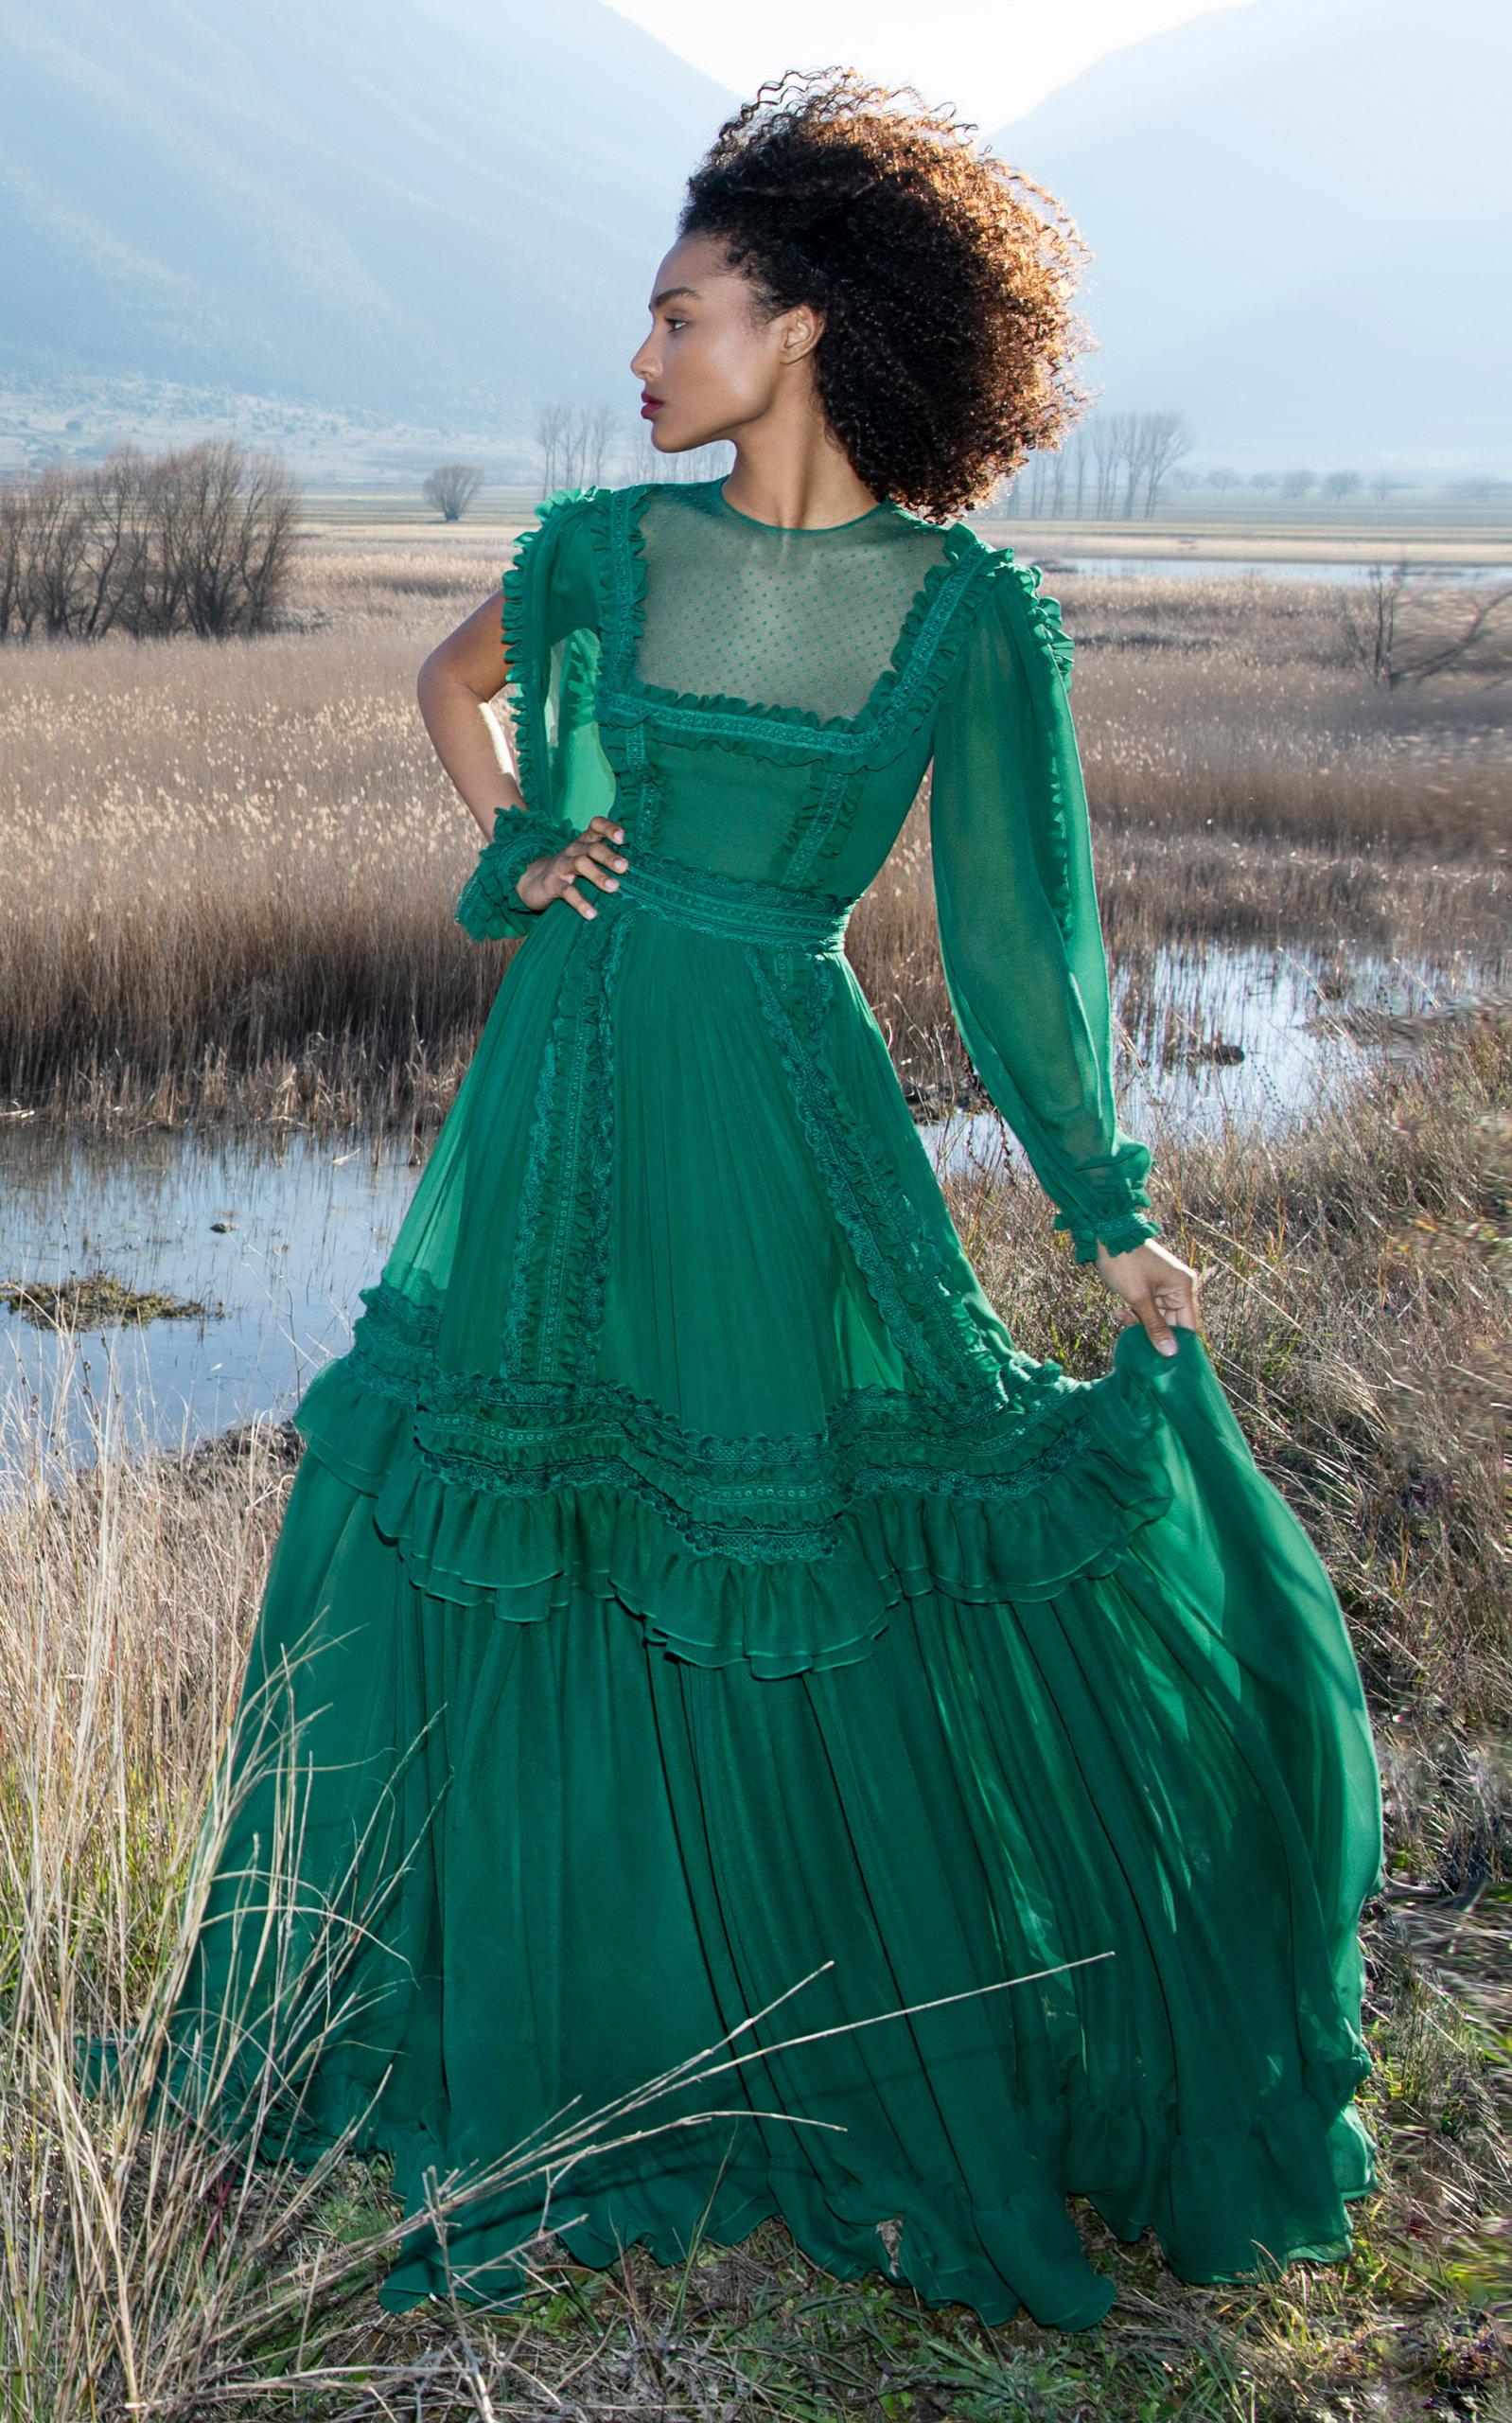 green chiffon dress